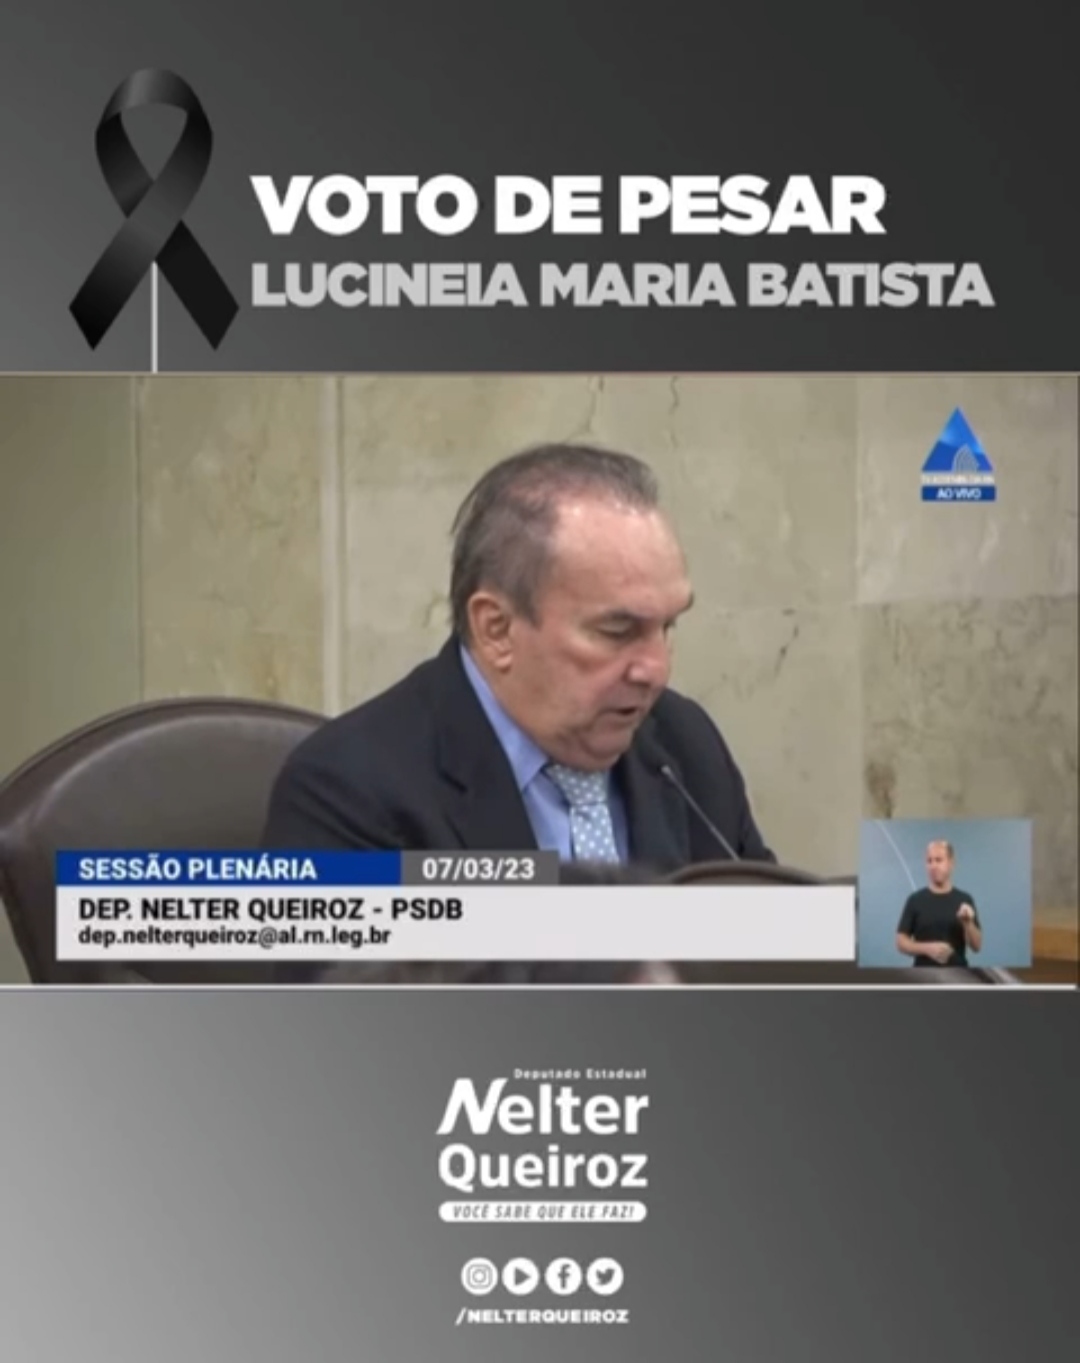 Deputado estadual Nelter Queiroz apresenta requerimento de pesar aos familiares de Lucineia Maria Batista(Vídeo)